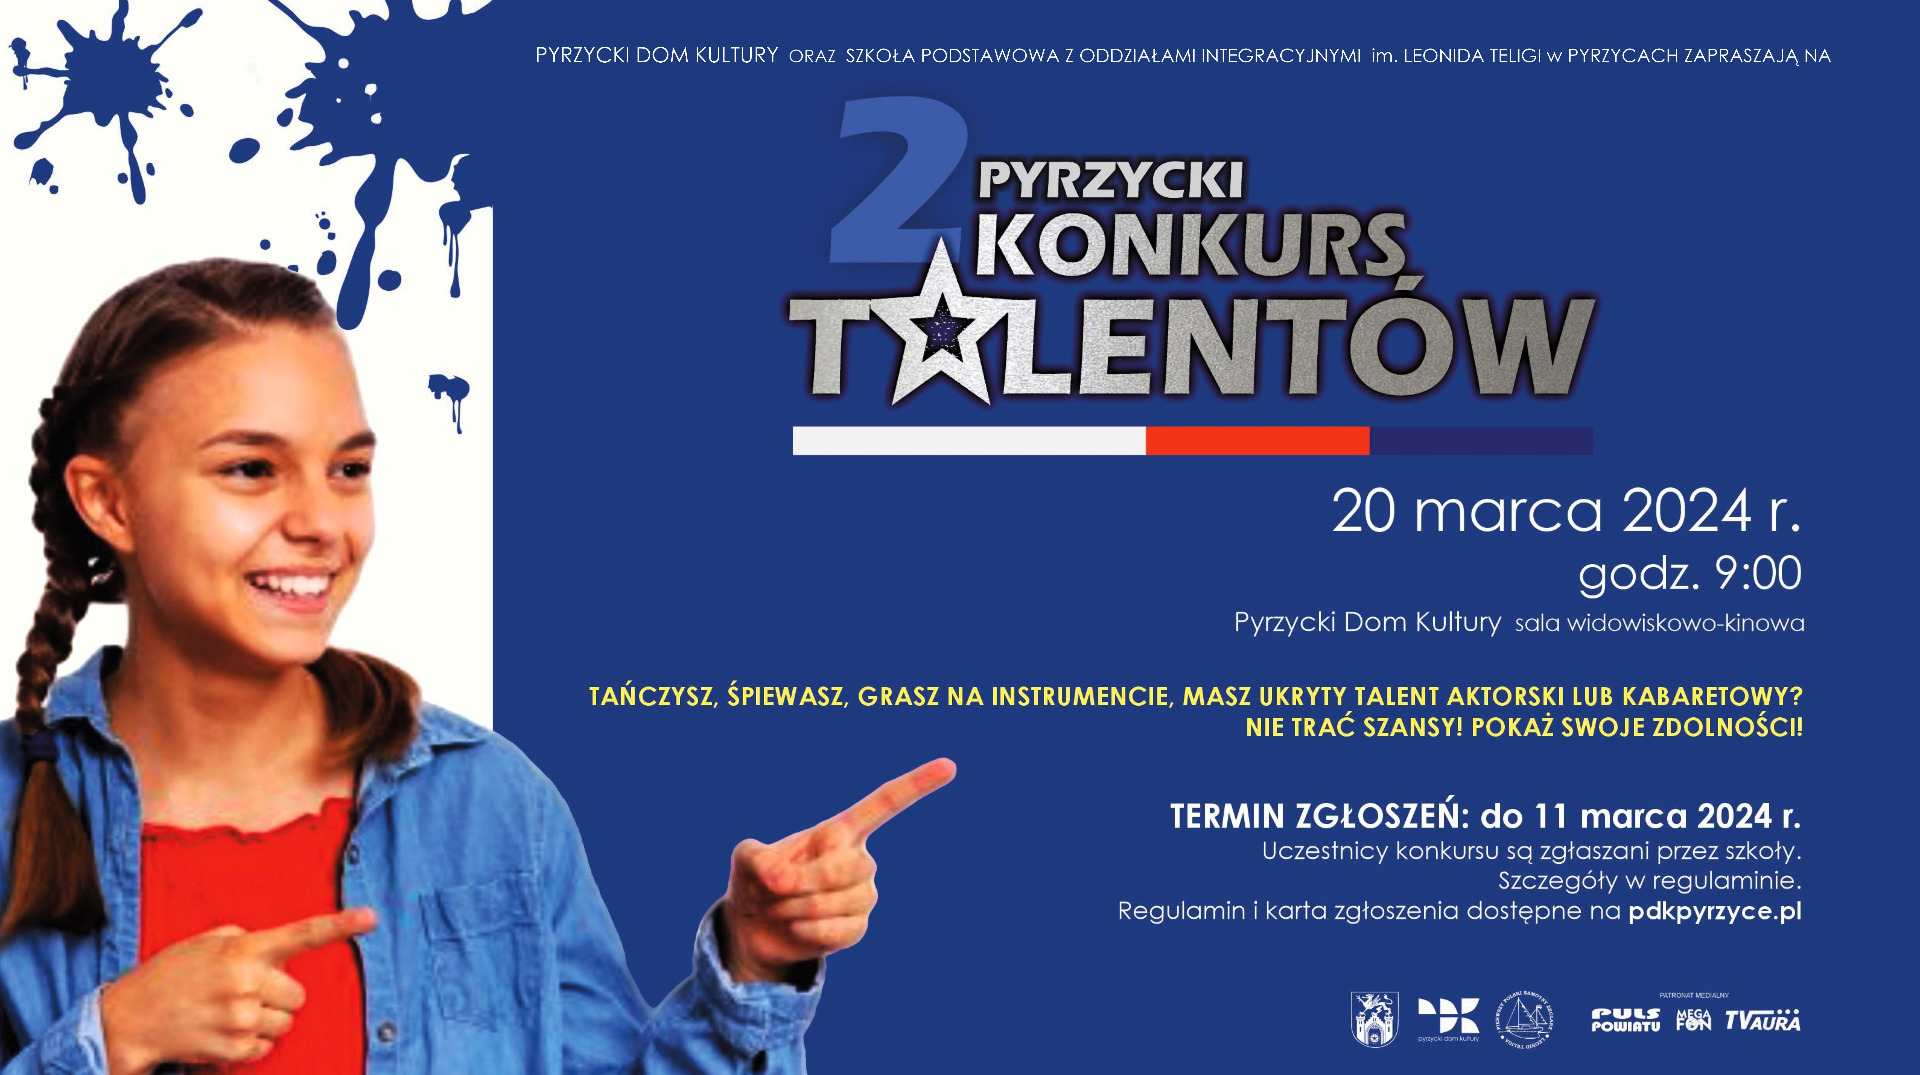 Plakat informujący o drugim Pyrzyckim Konkursie Talentów.